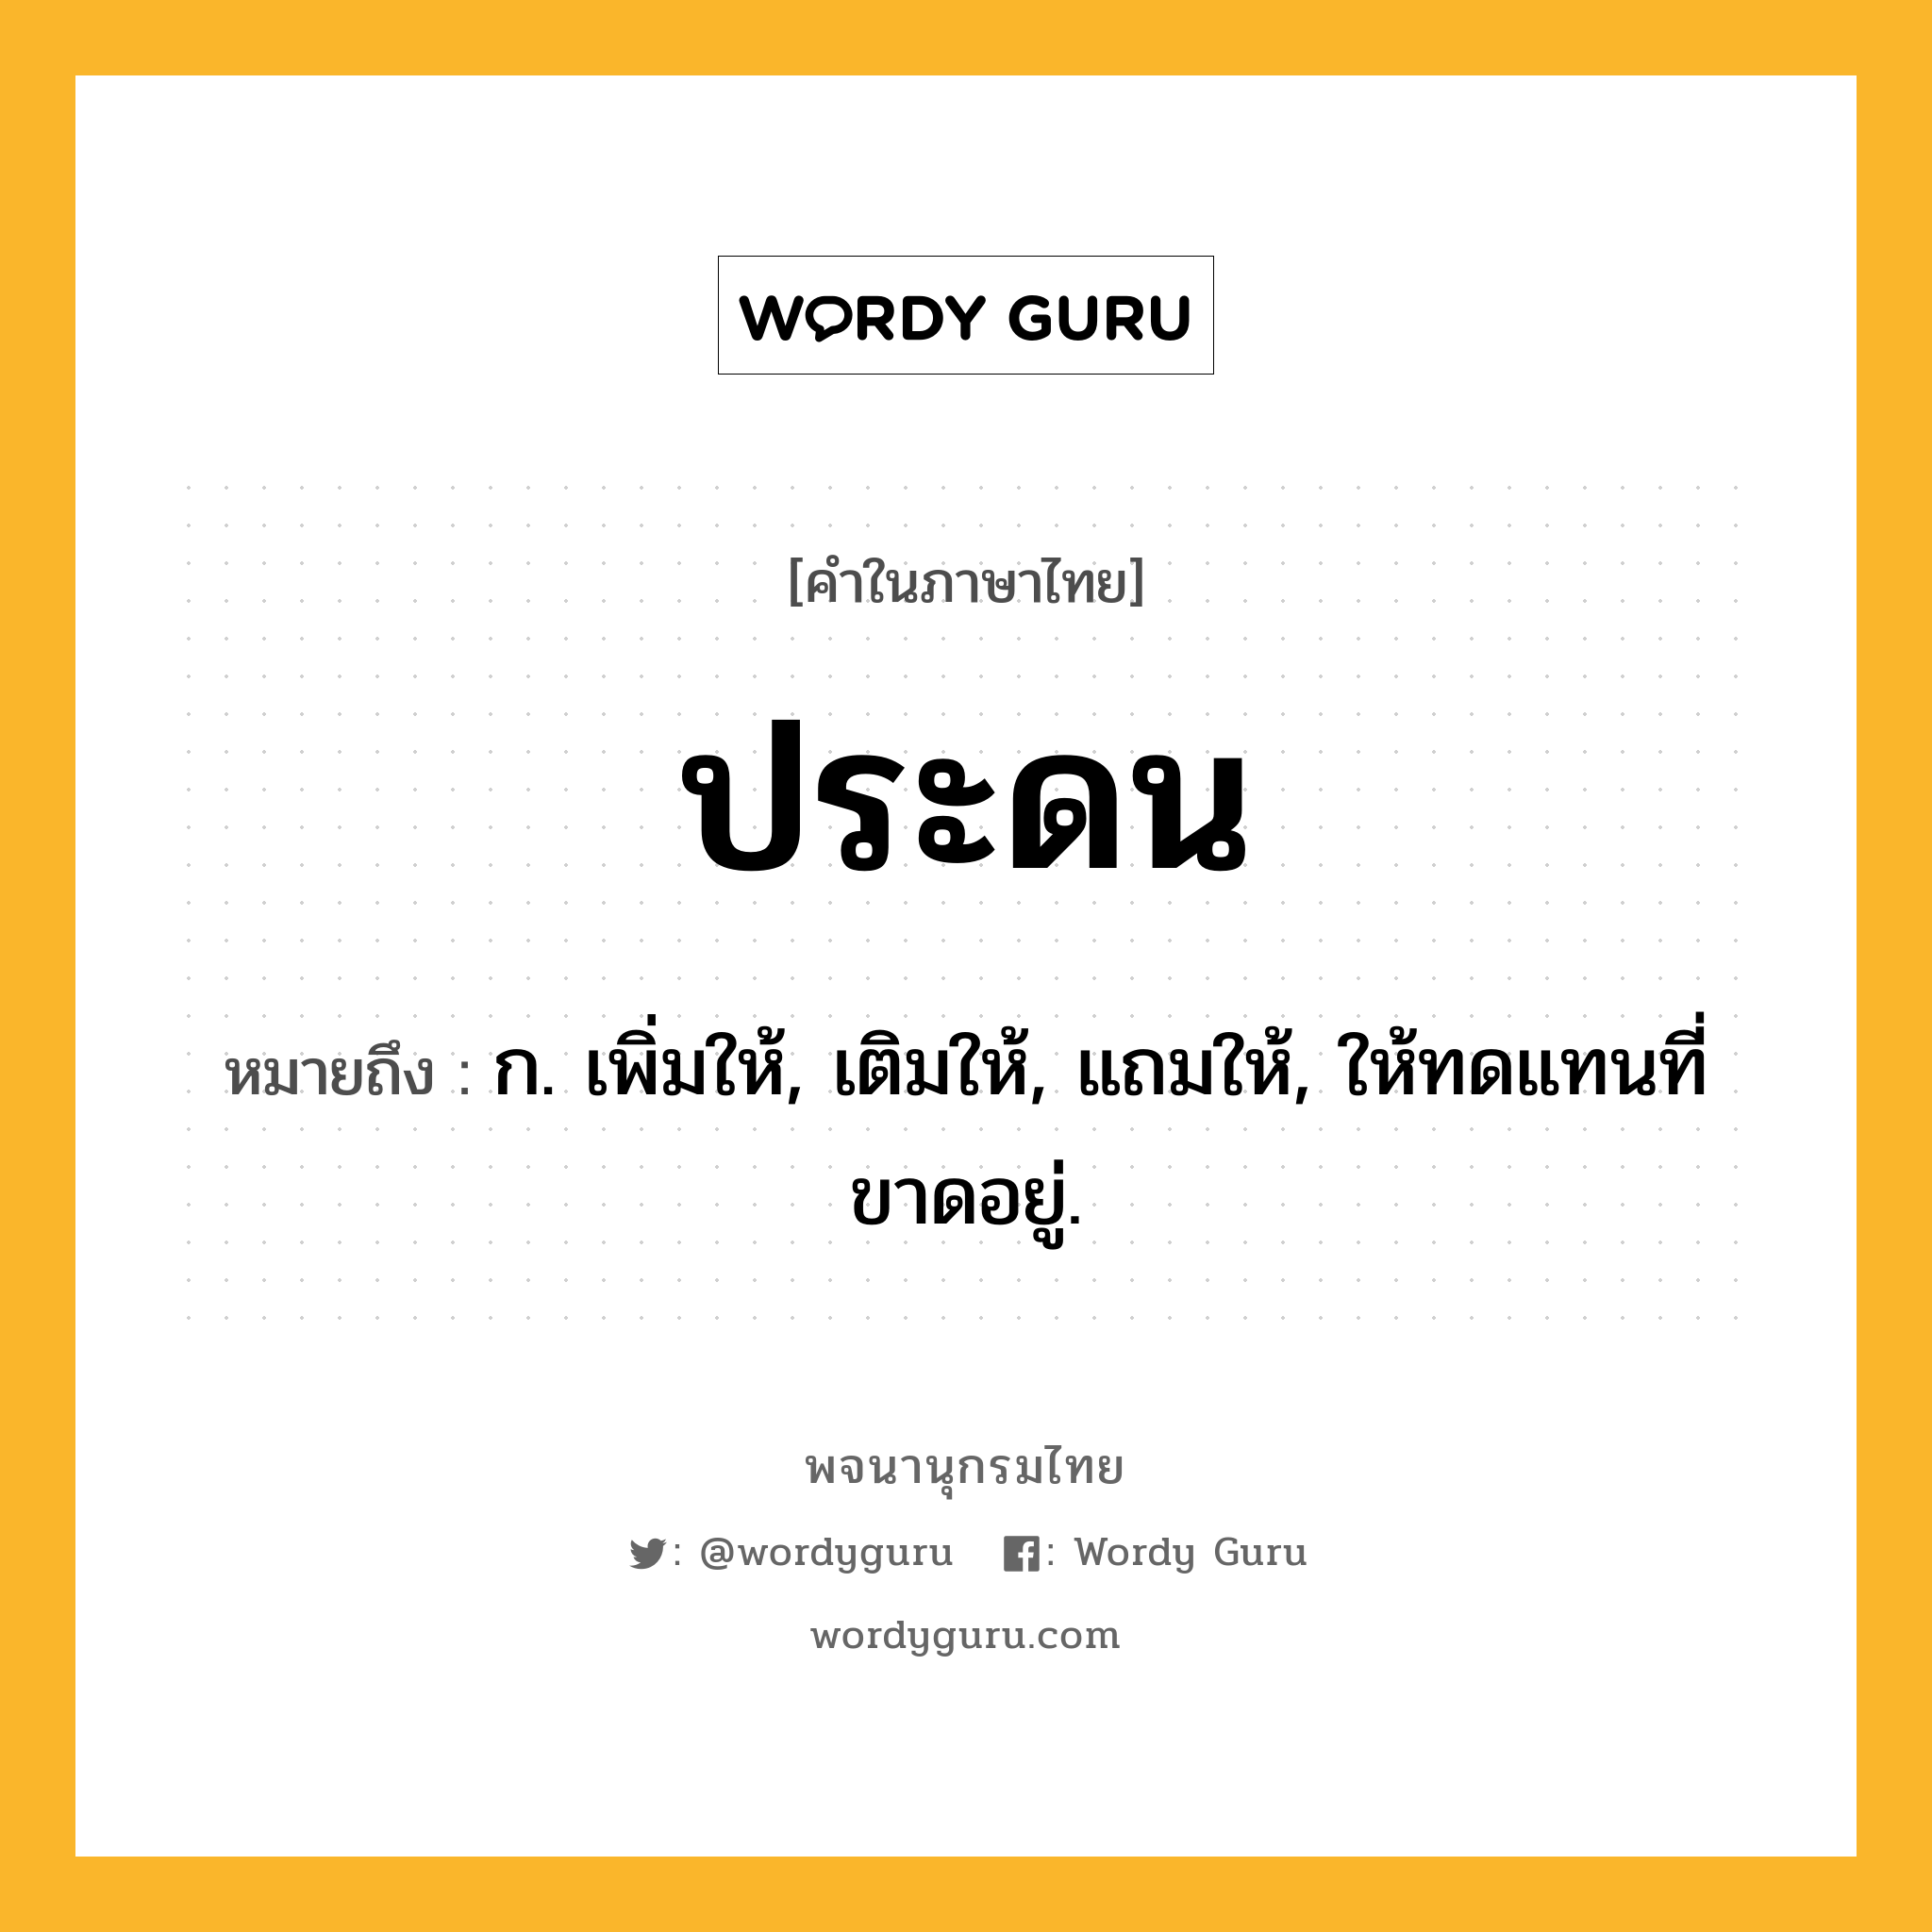 ประดน ความหมาย หมายถึงอะไร?, คำในภาษาไทย ประดน หมายถึง ก. เพิ่มให้, เติมให้, แถมให้, ให้ทดแทนที่ขาดอยู่.